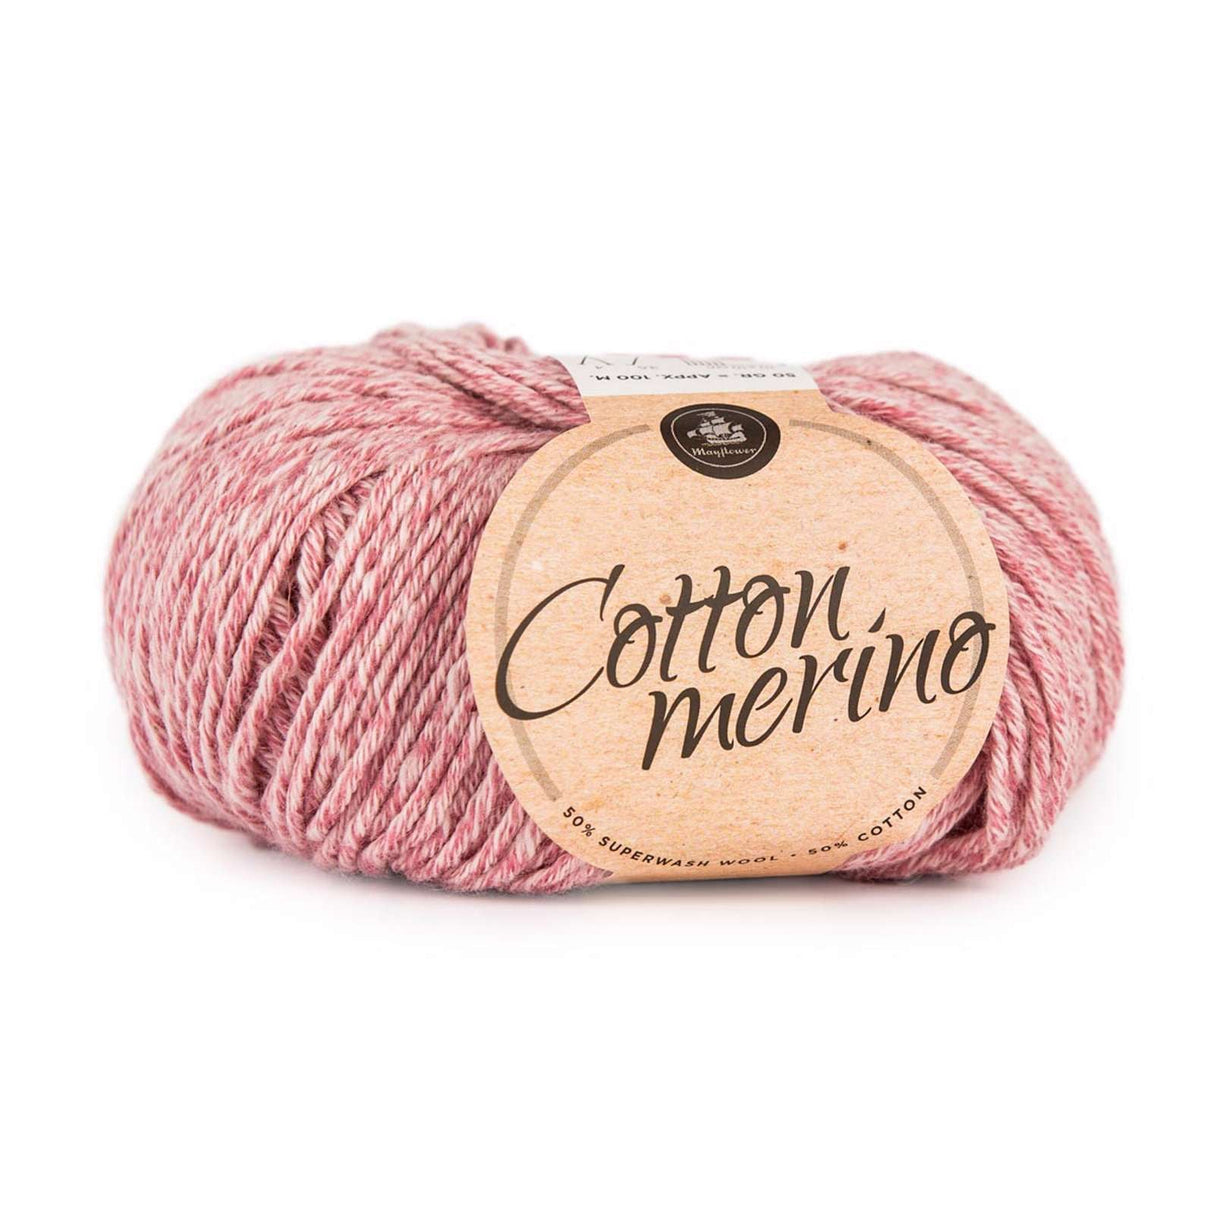 Cotton Merino Classic